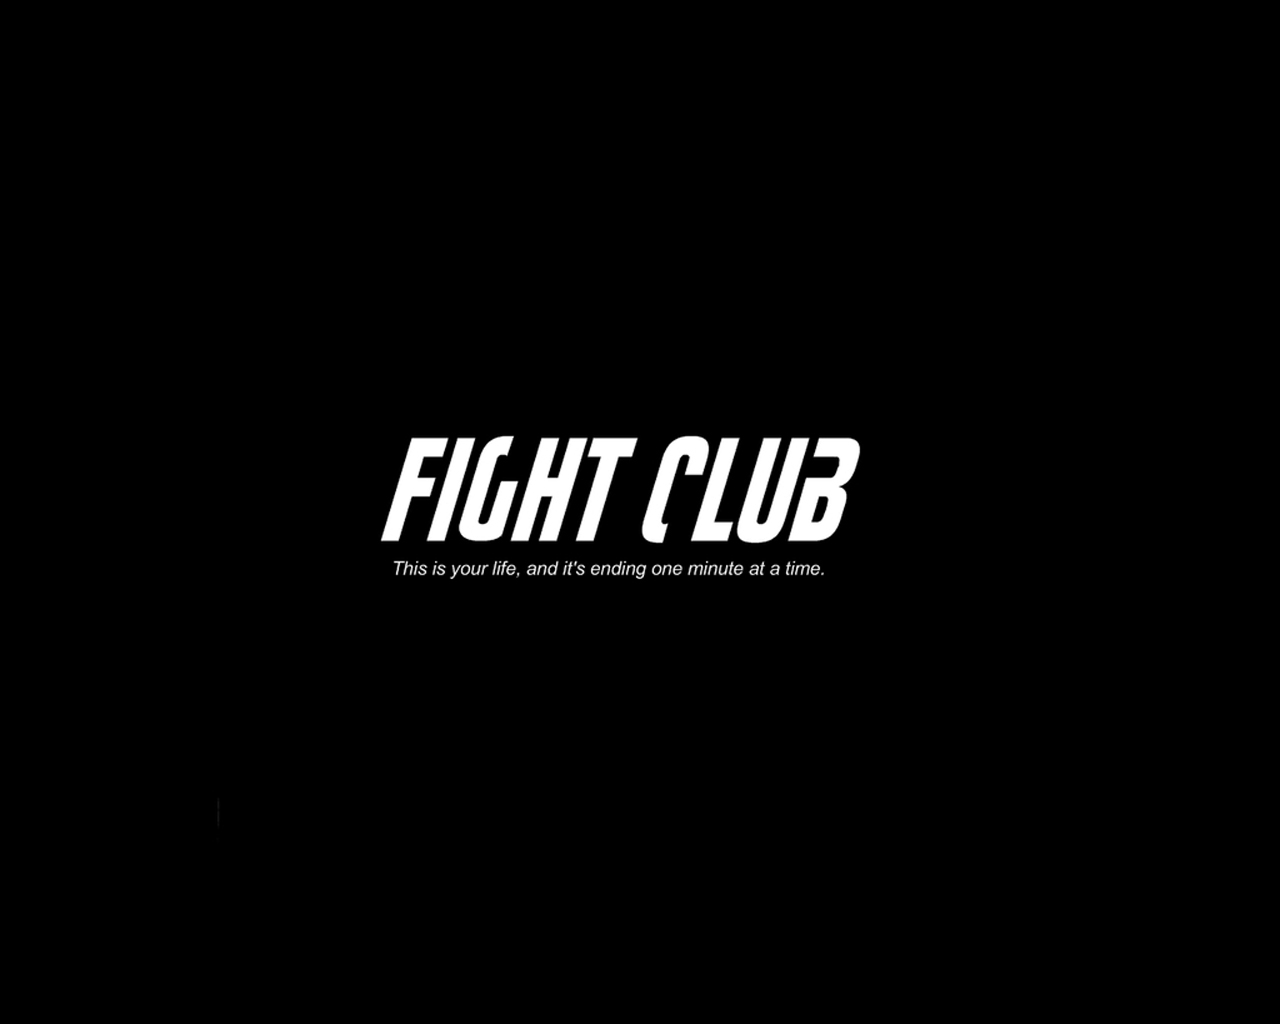 Movie Fight Club Wallpaper Wallpoper